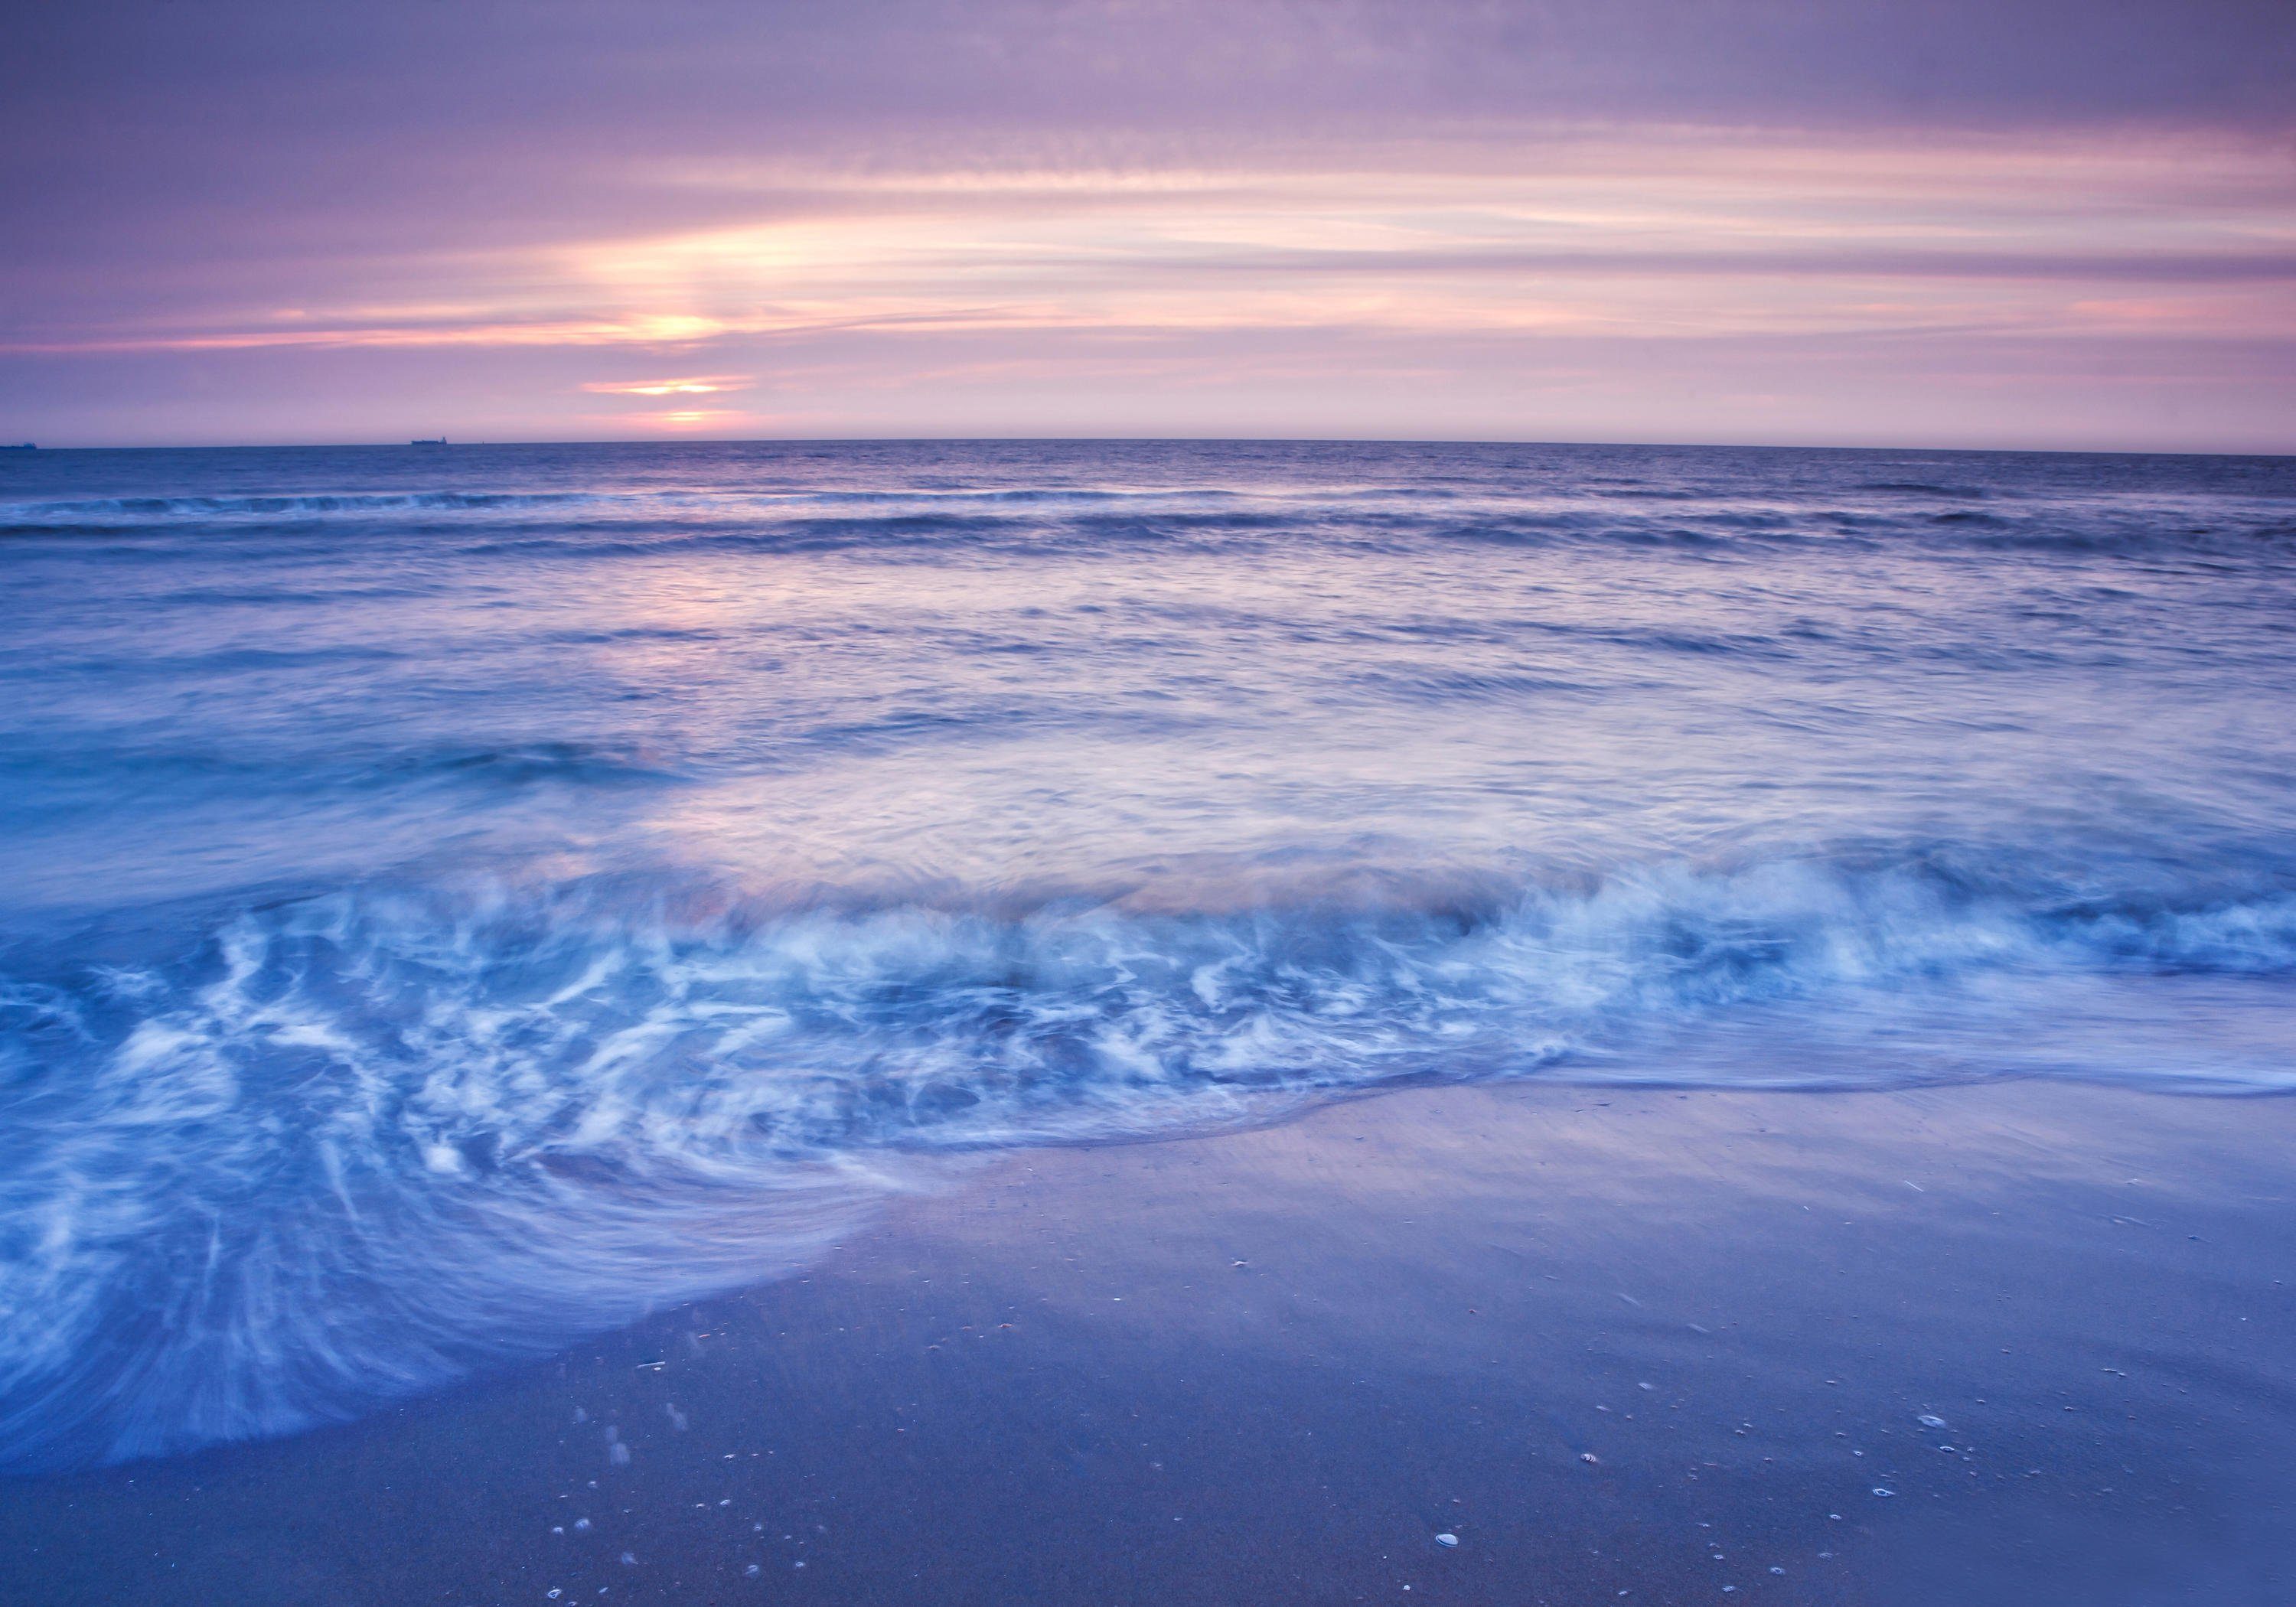 wandmotiv24 Fototapete Romantisch Strand Sonnenuntergang, strukturiert, Wandtapete, Motivtapete, matt, Vinyltapete, selbstklebend